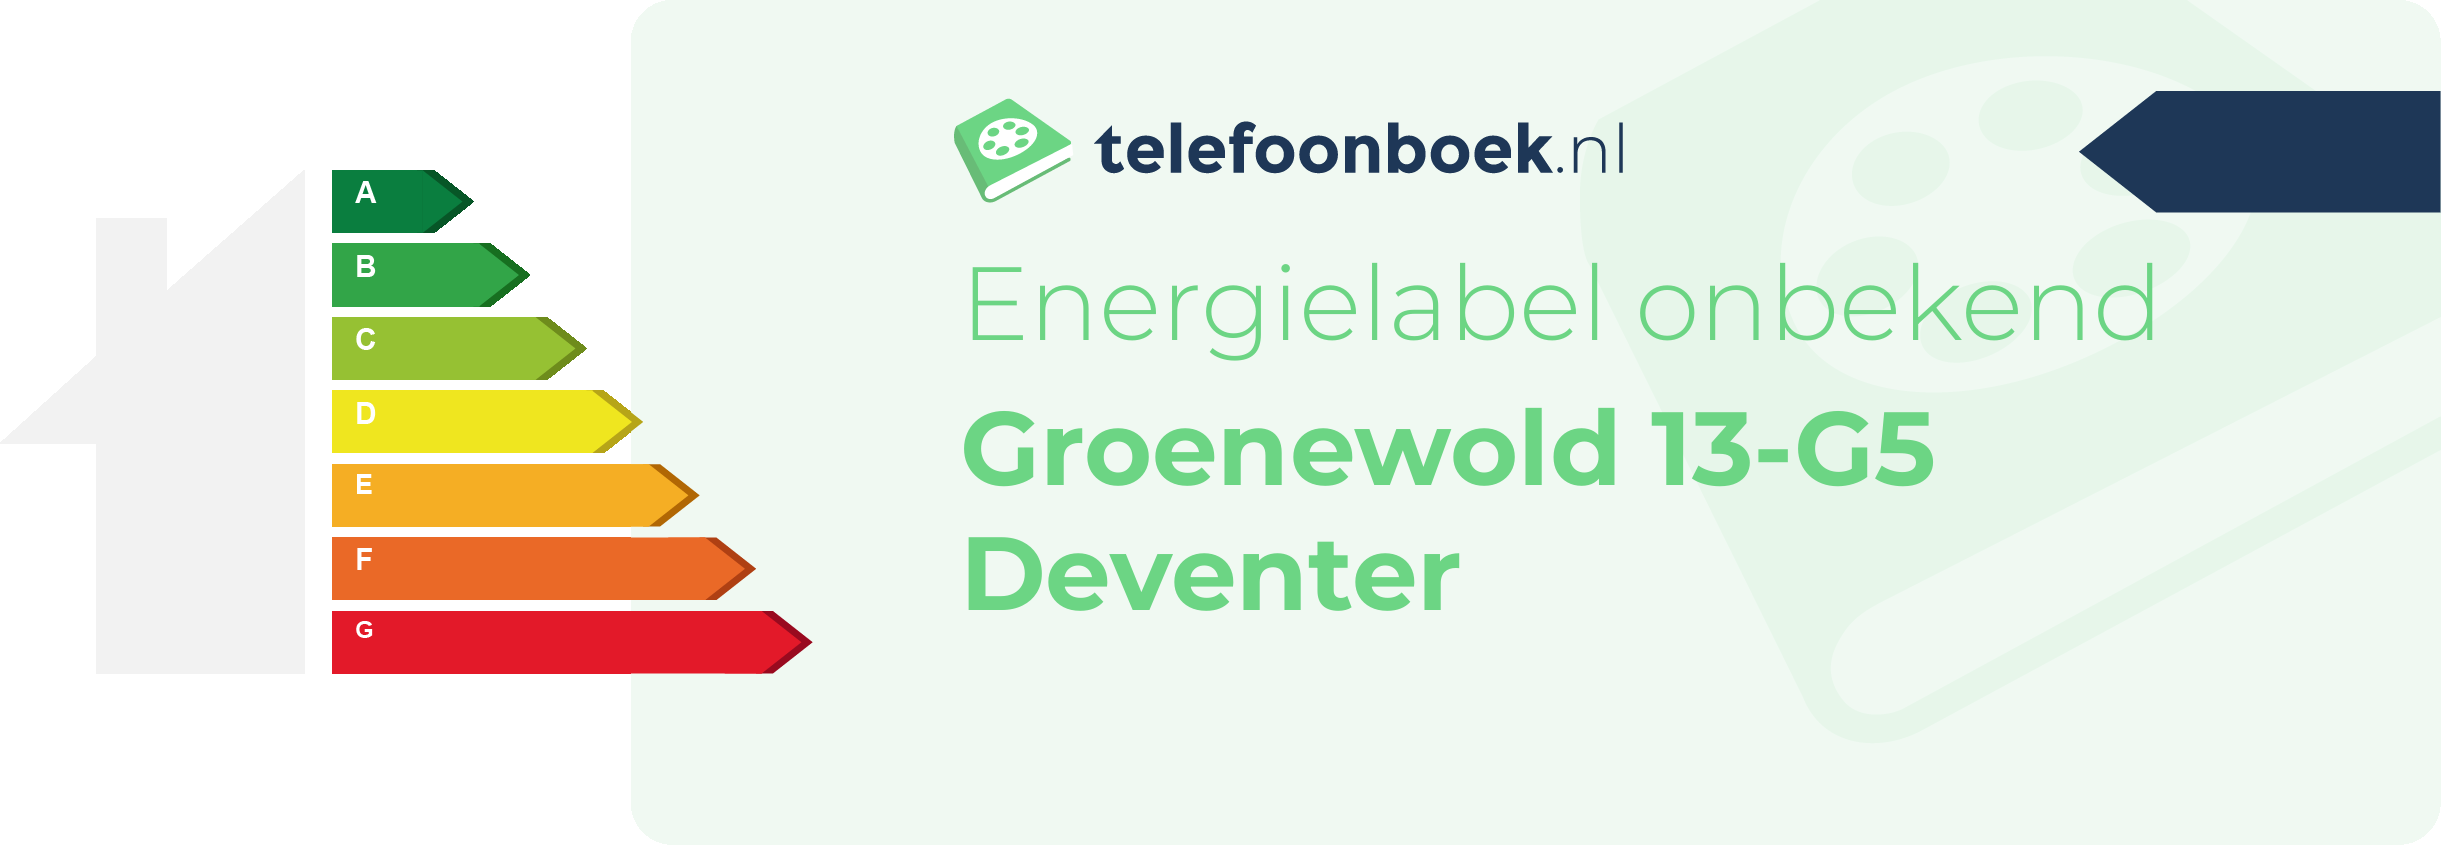 Energielabel Groenewold 13-G5 Deventer